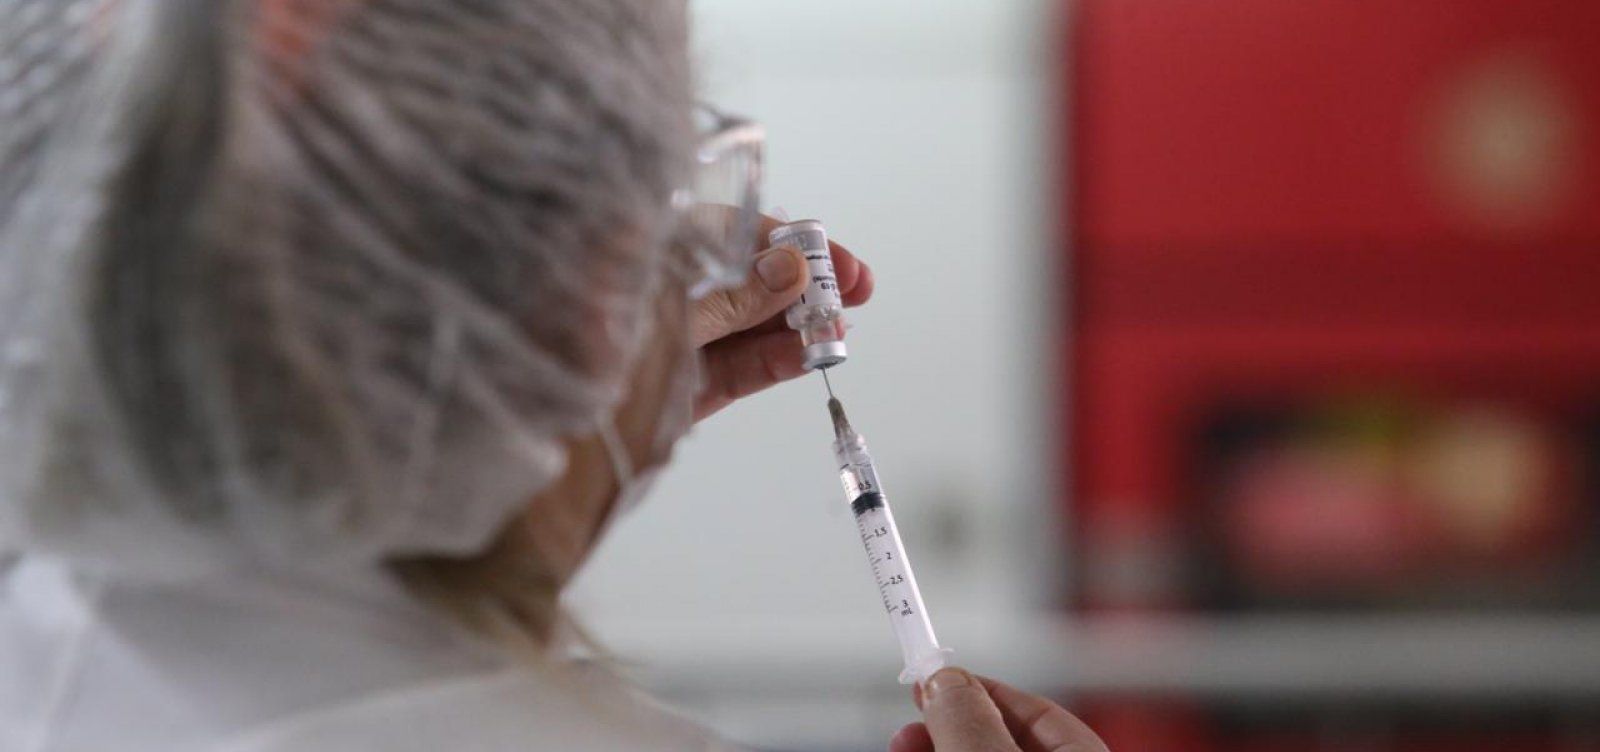 Mutirão para vacinação de 2ª dose da CoronaVac começa neste sábado em Salvador